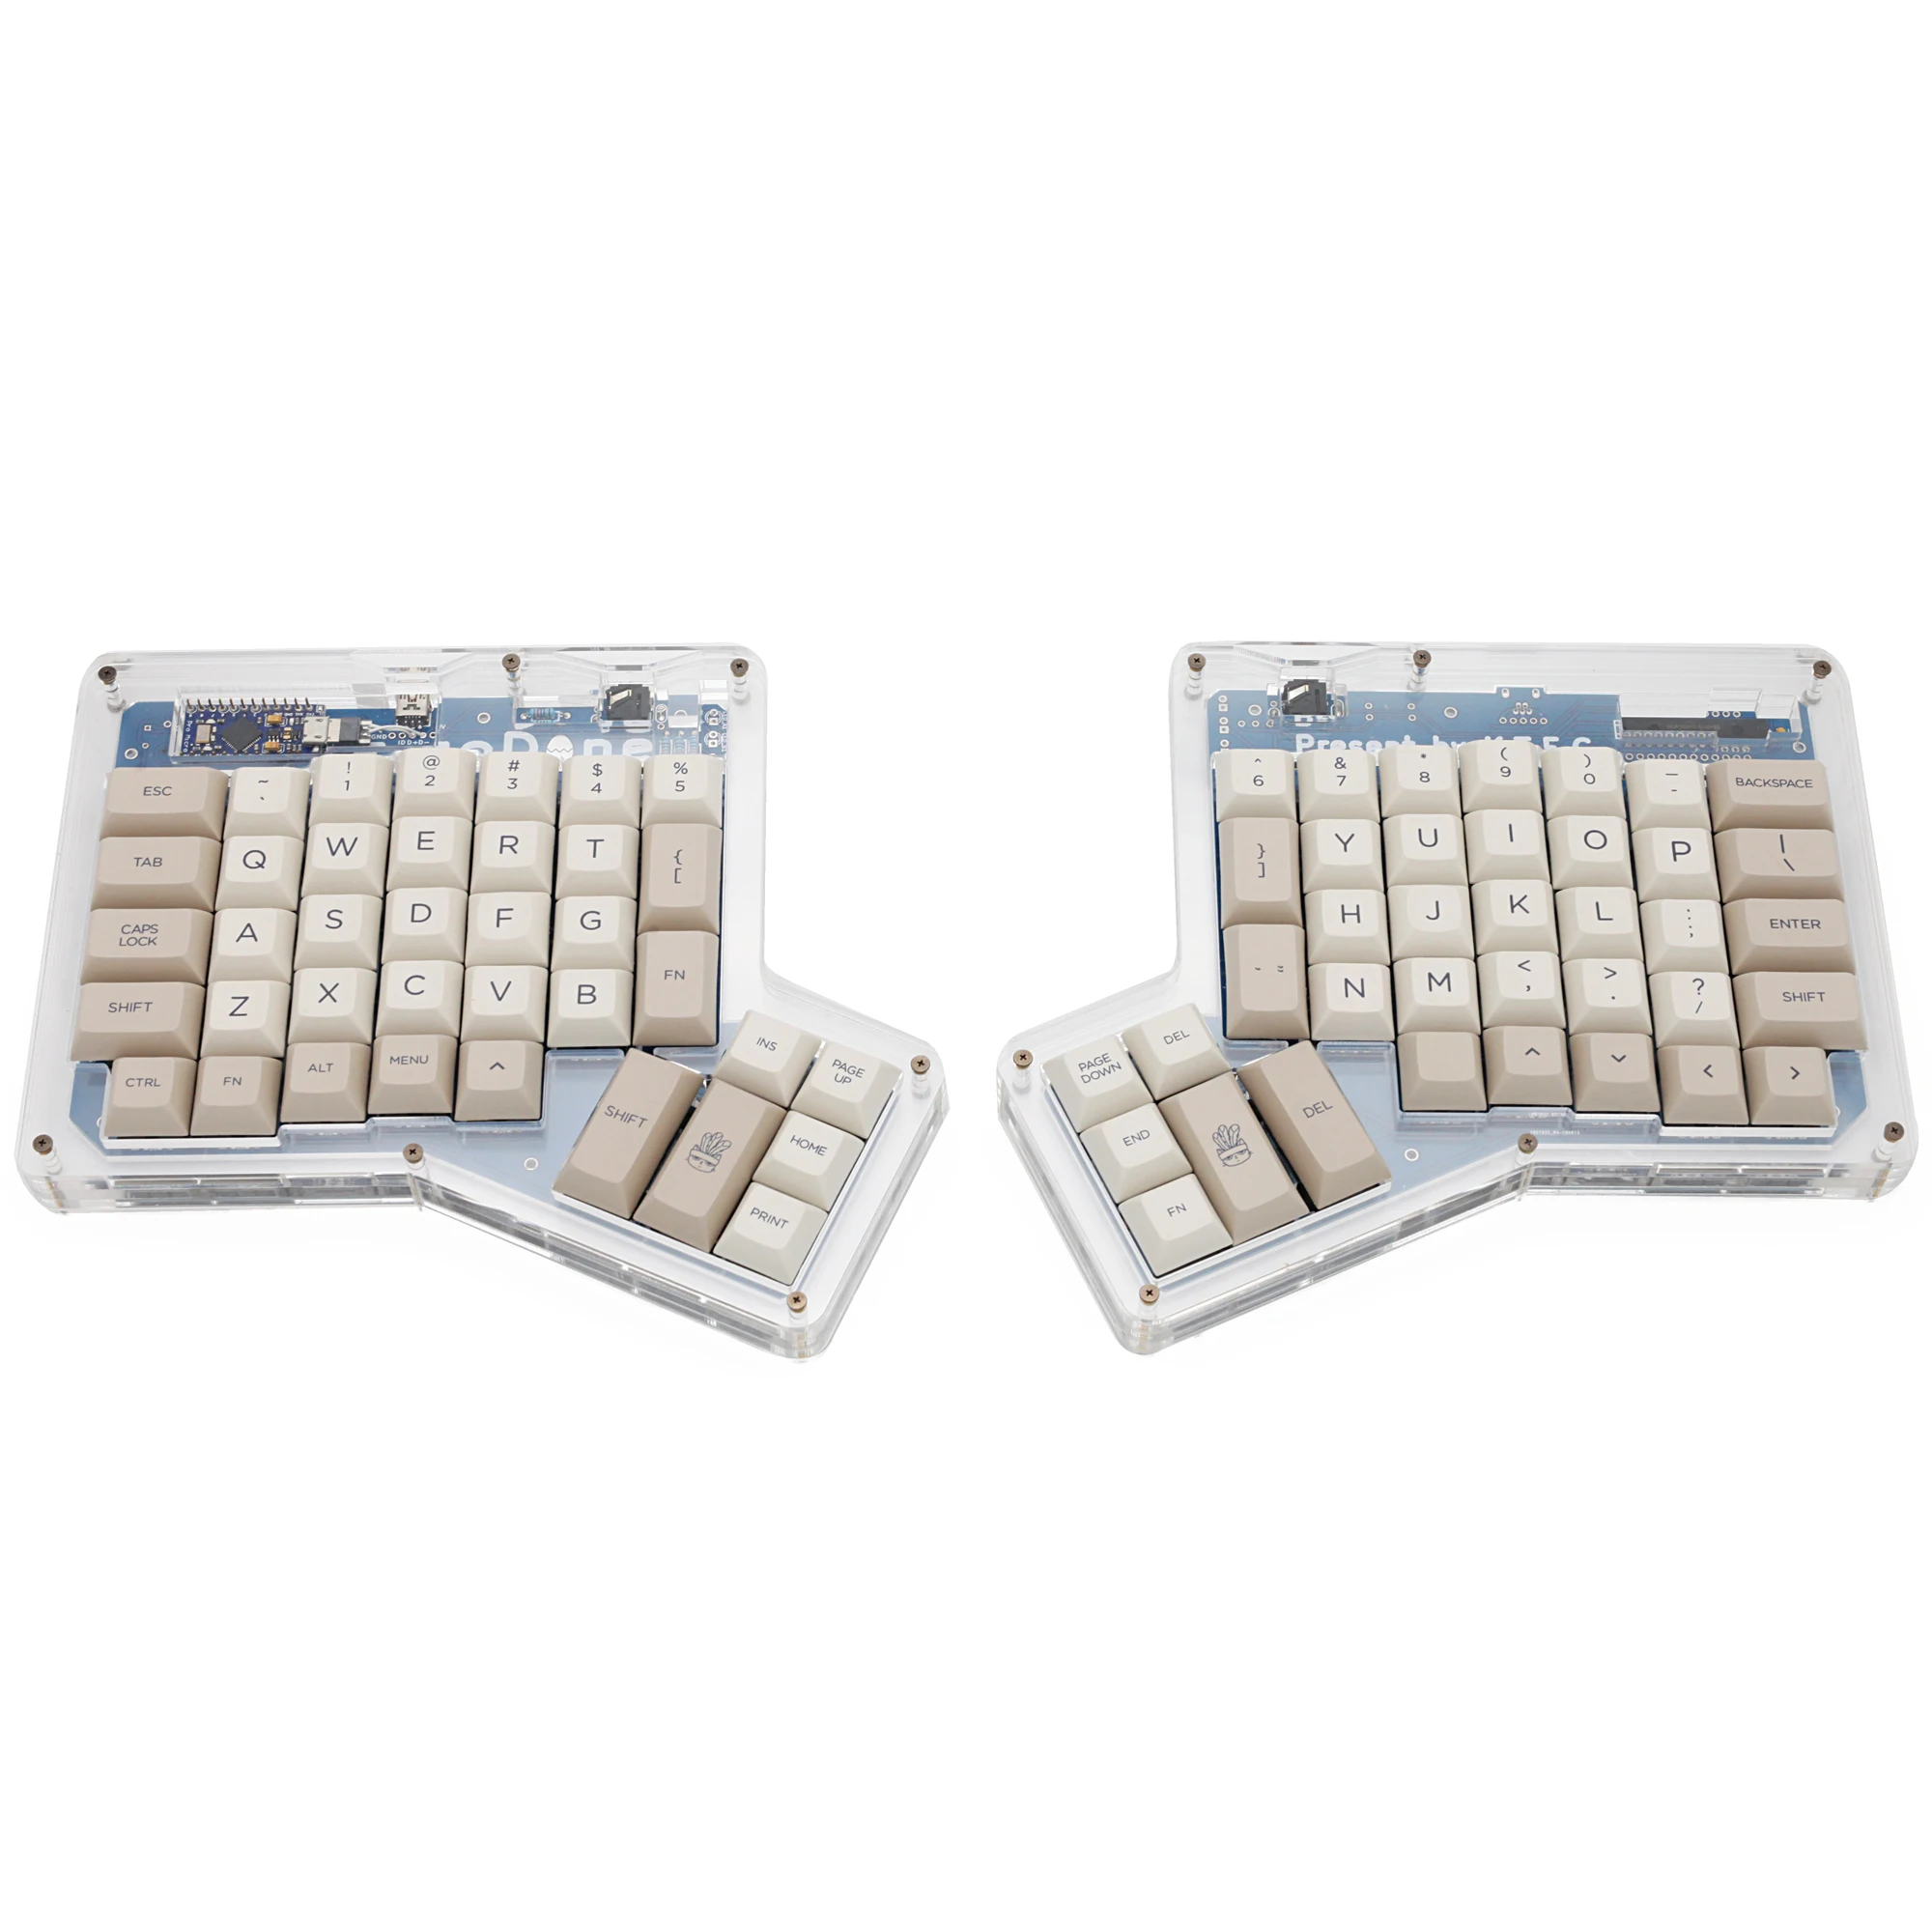 

dsa ergodox ergo pbt dye subbed keycaps for custom mechanical keyboards Infinity ErgoDox Ergonomic Keyboard keycaps beige grey